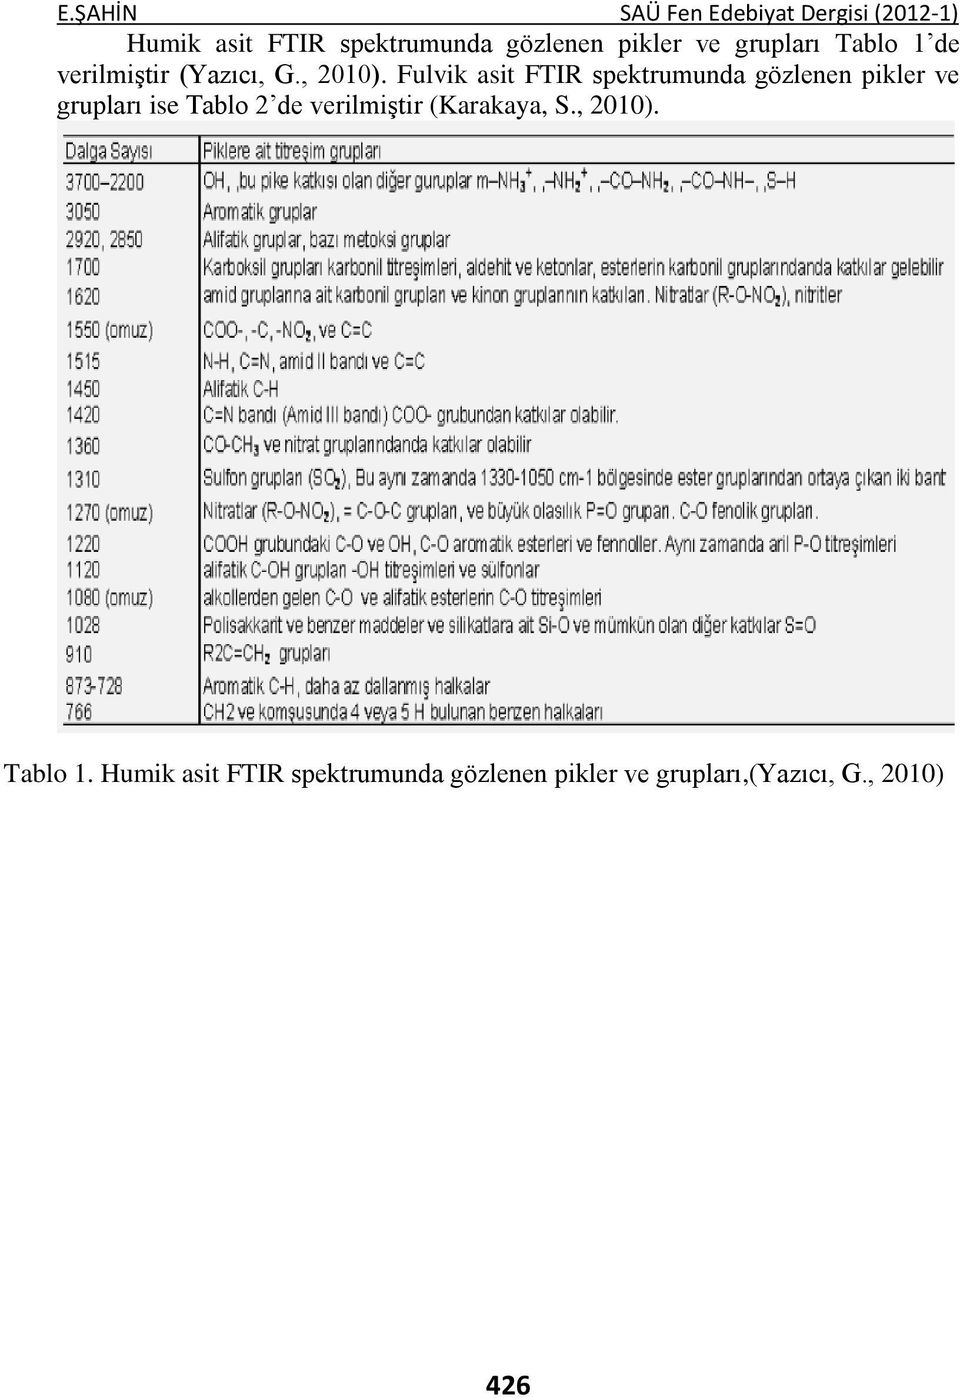 Fulvik asit FTIR spektrumunda gözlenen pikler ve grupları ise Tablo 2 de